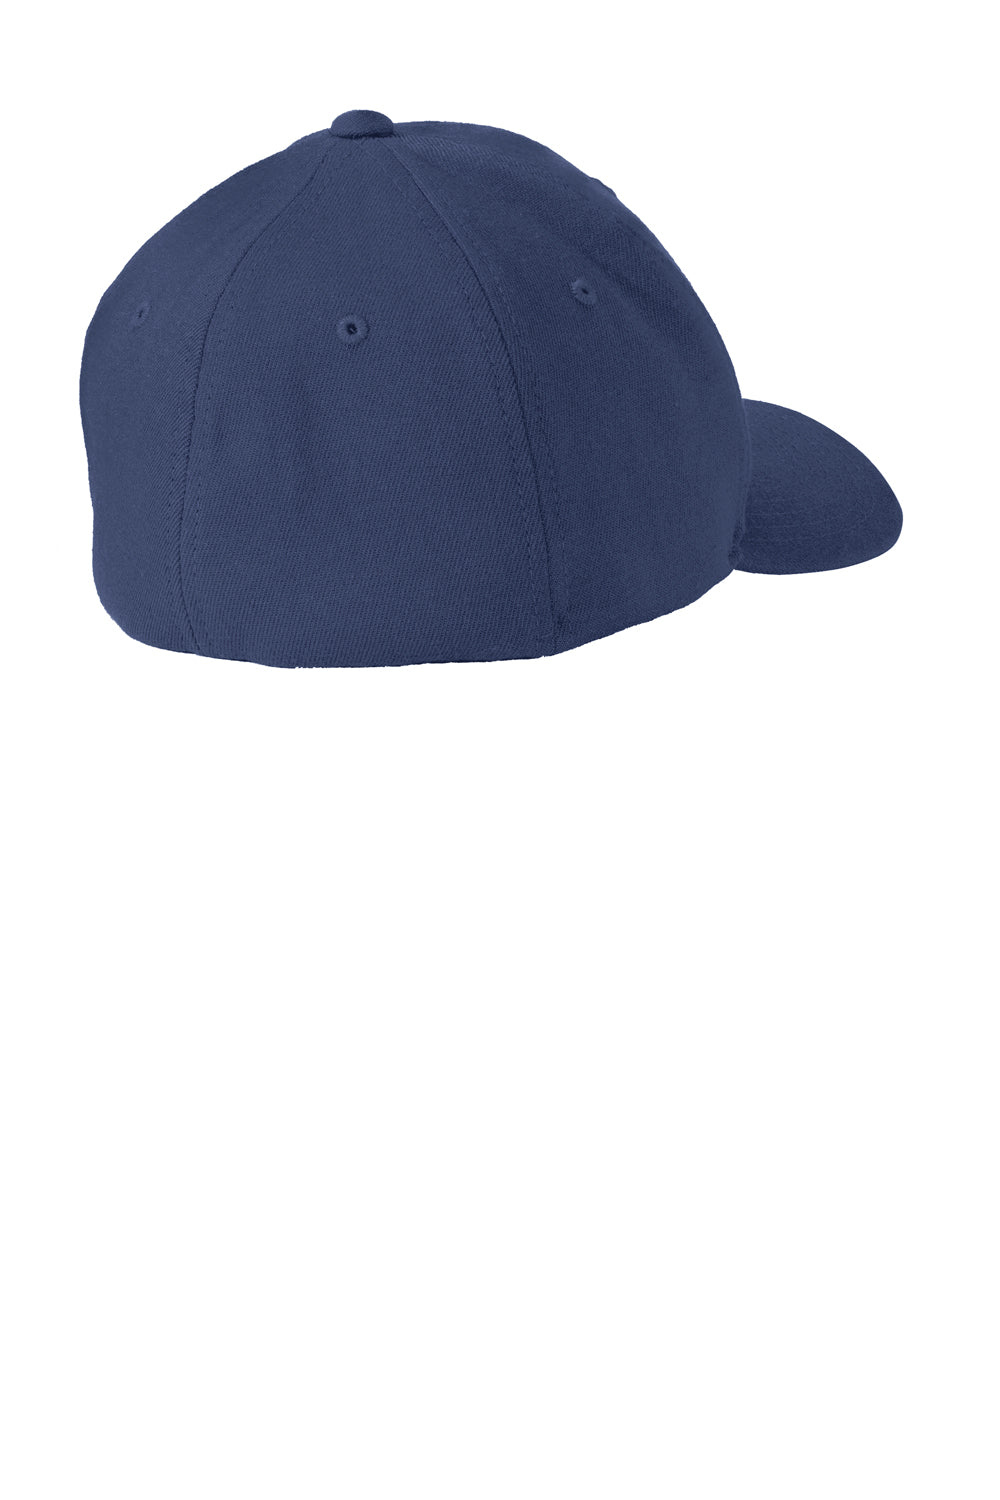 Port Authority C928 Flexfit Wool Blend Hat Navy Blue Back